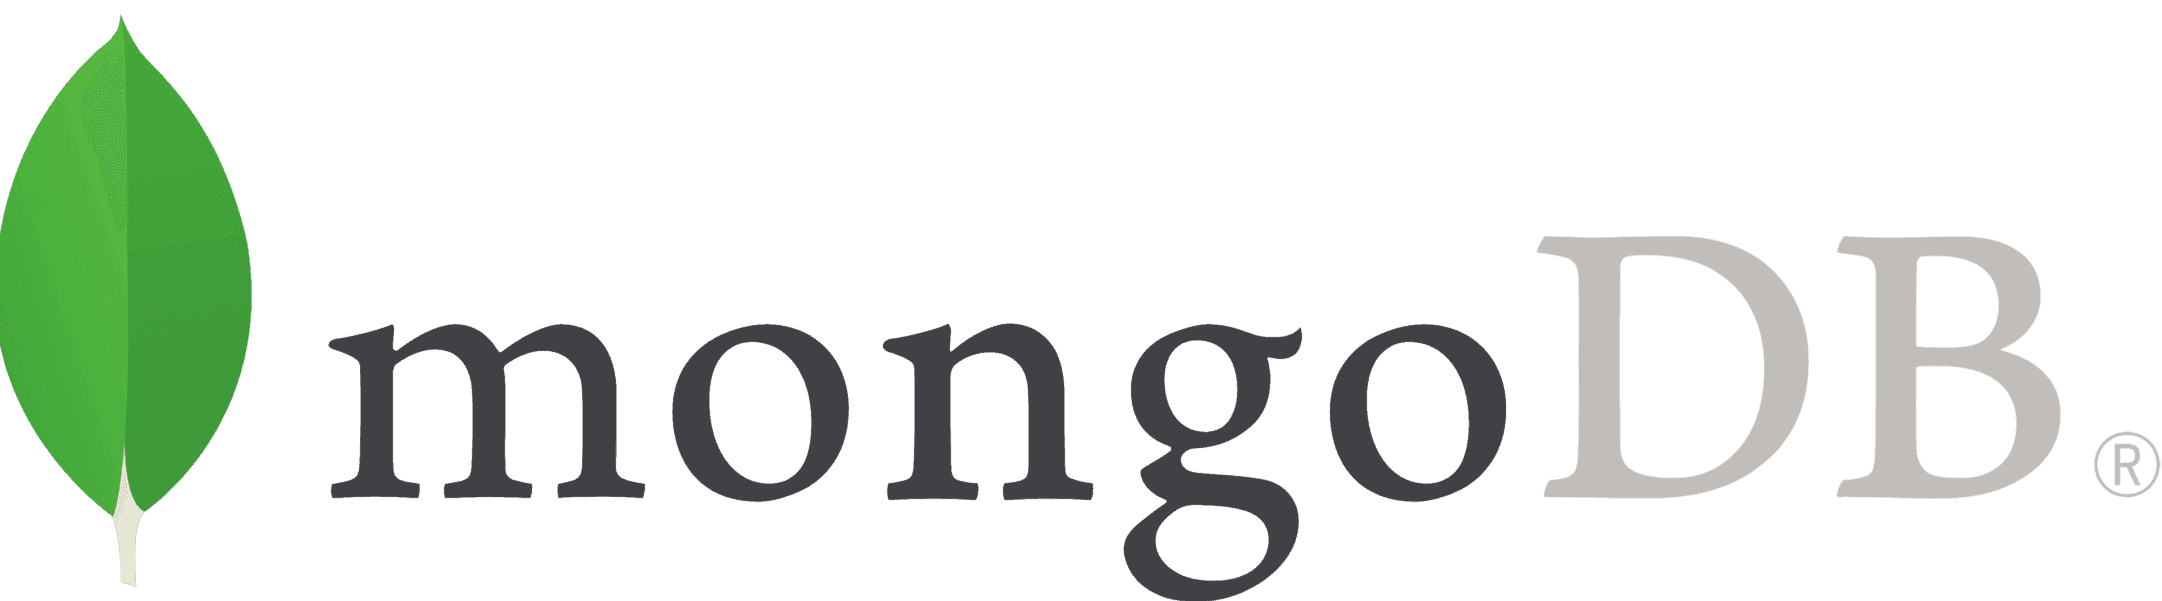 mongodb_logo.png